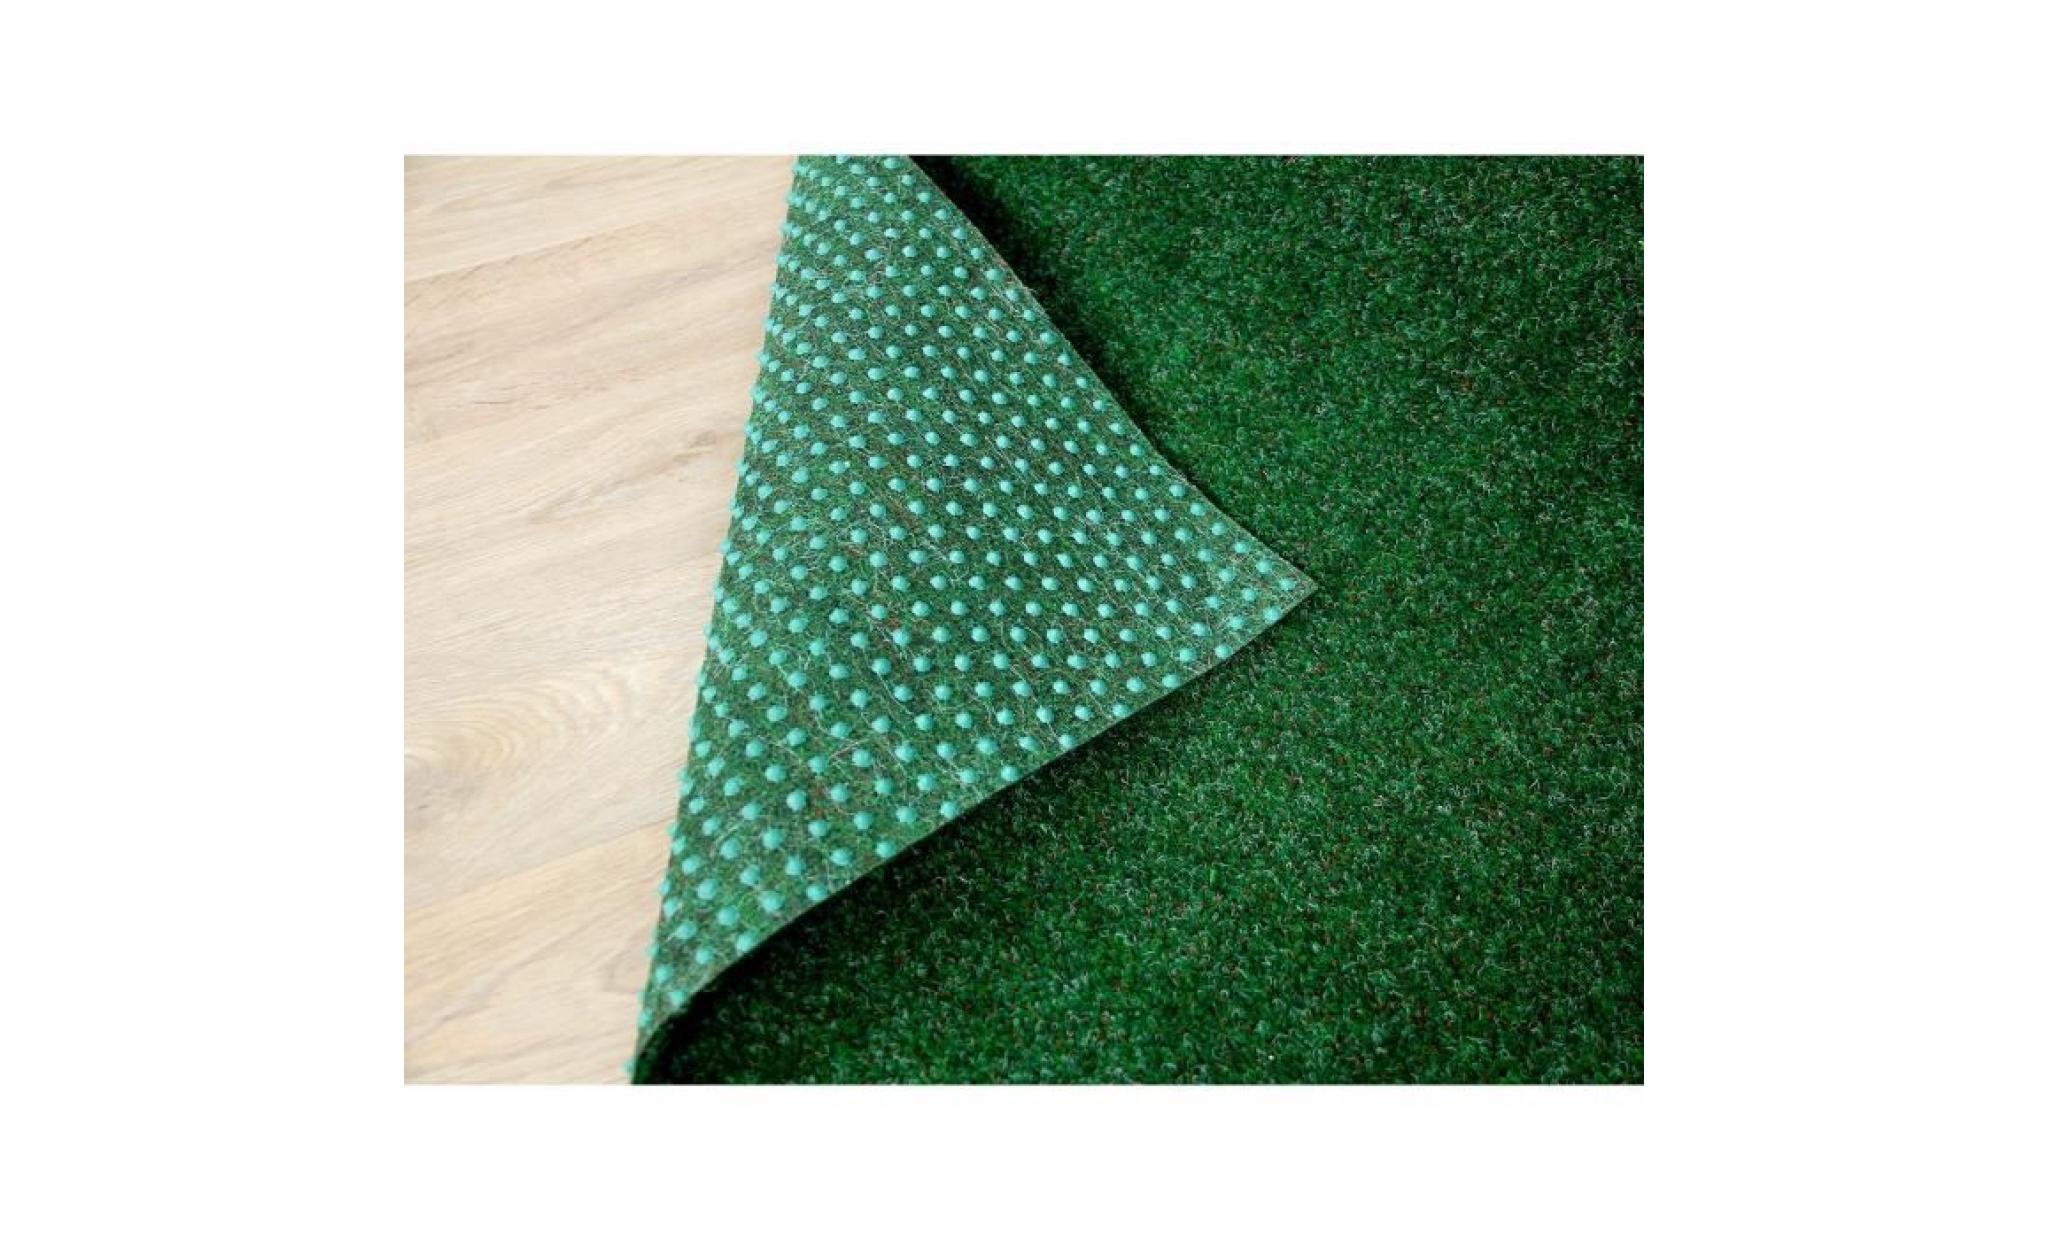 kingston   tapis type gazon artificiel – pour jardin, terrasse, balcon   brun [200x450 cm] pas cher